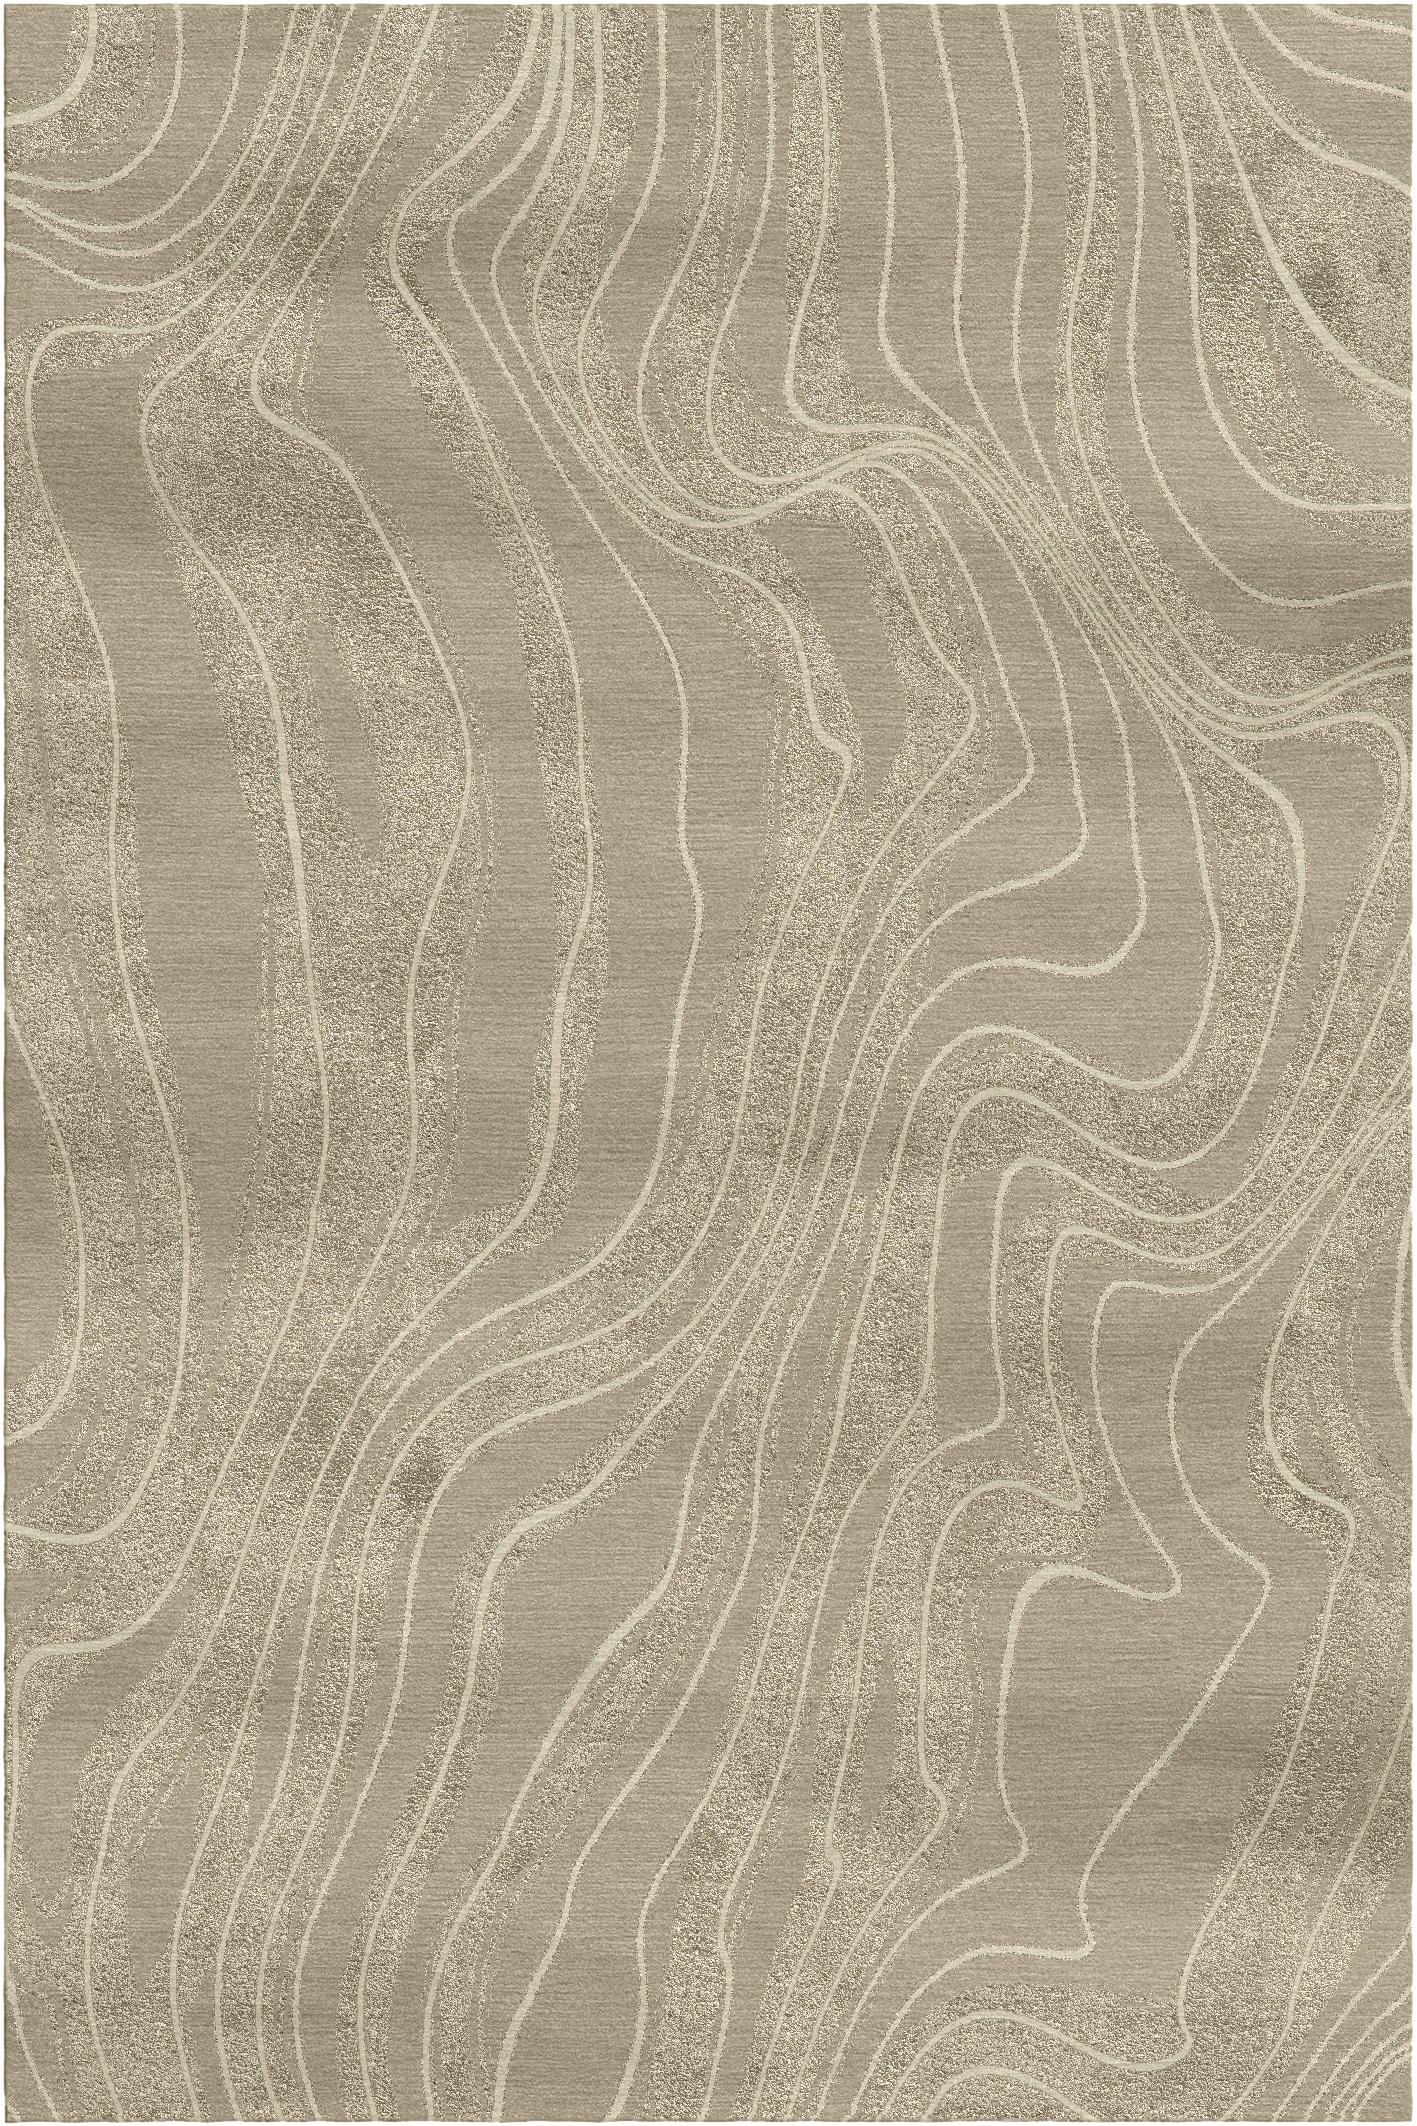 Deserto-Teppich II von Giulio Brambilla
Abmessungen: D 300 x B 200 x H 1,5 cm
MATERIALIEN: NZ-Wolle, Bambusseide
Erhältlich in anderen Farben.

Ein fesselndes Motiv aus gewundenen Linien, die sich über einen weichen Hintergrund schlängeln,